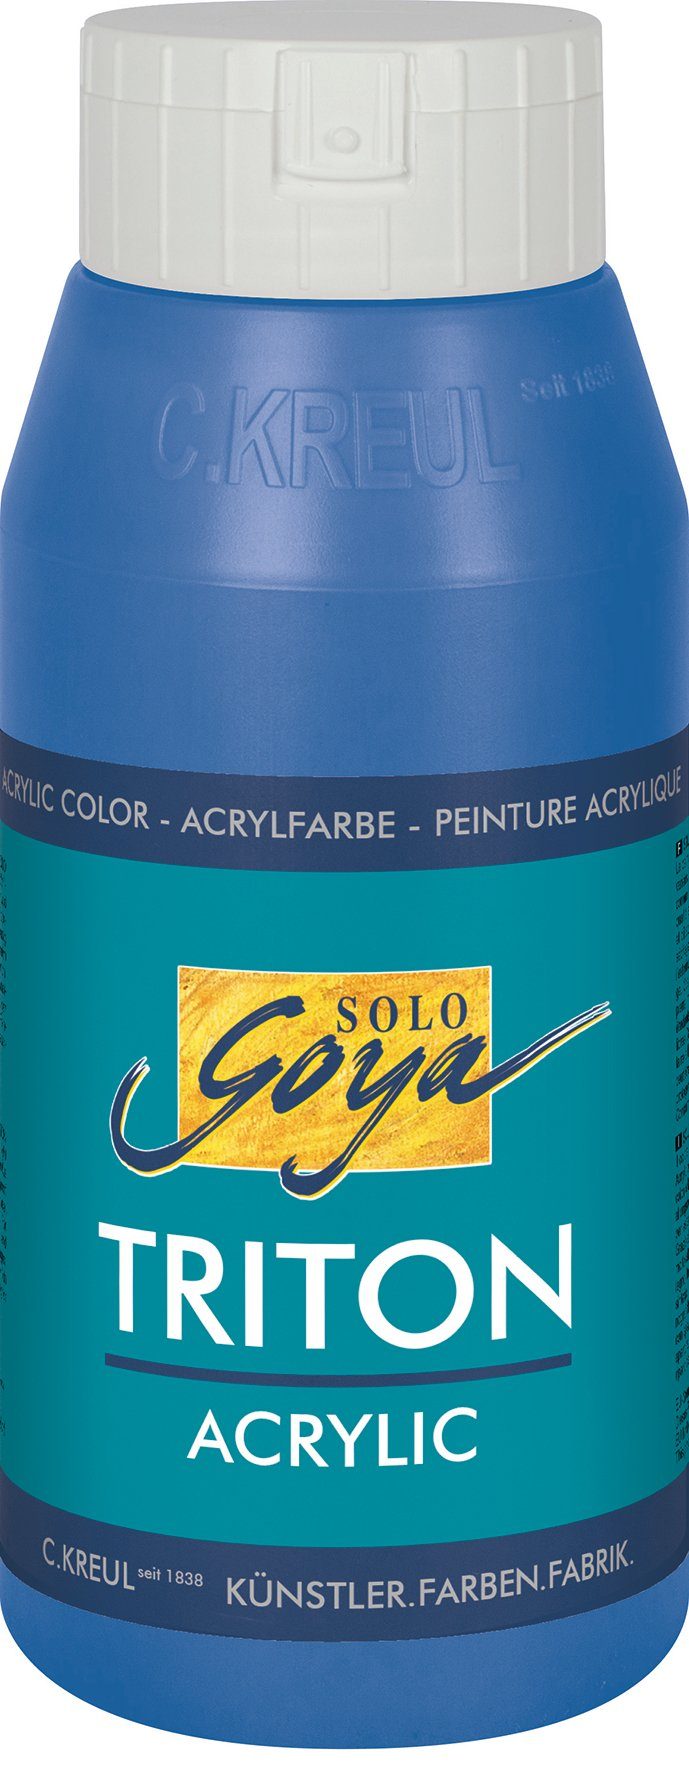 Coelinblau Acrylfarbe Triton 750 Solo ml Acrylic, Kreul Goya